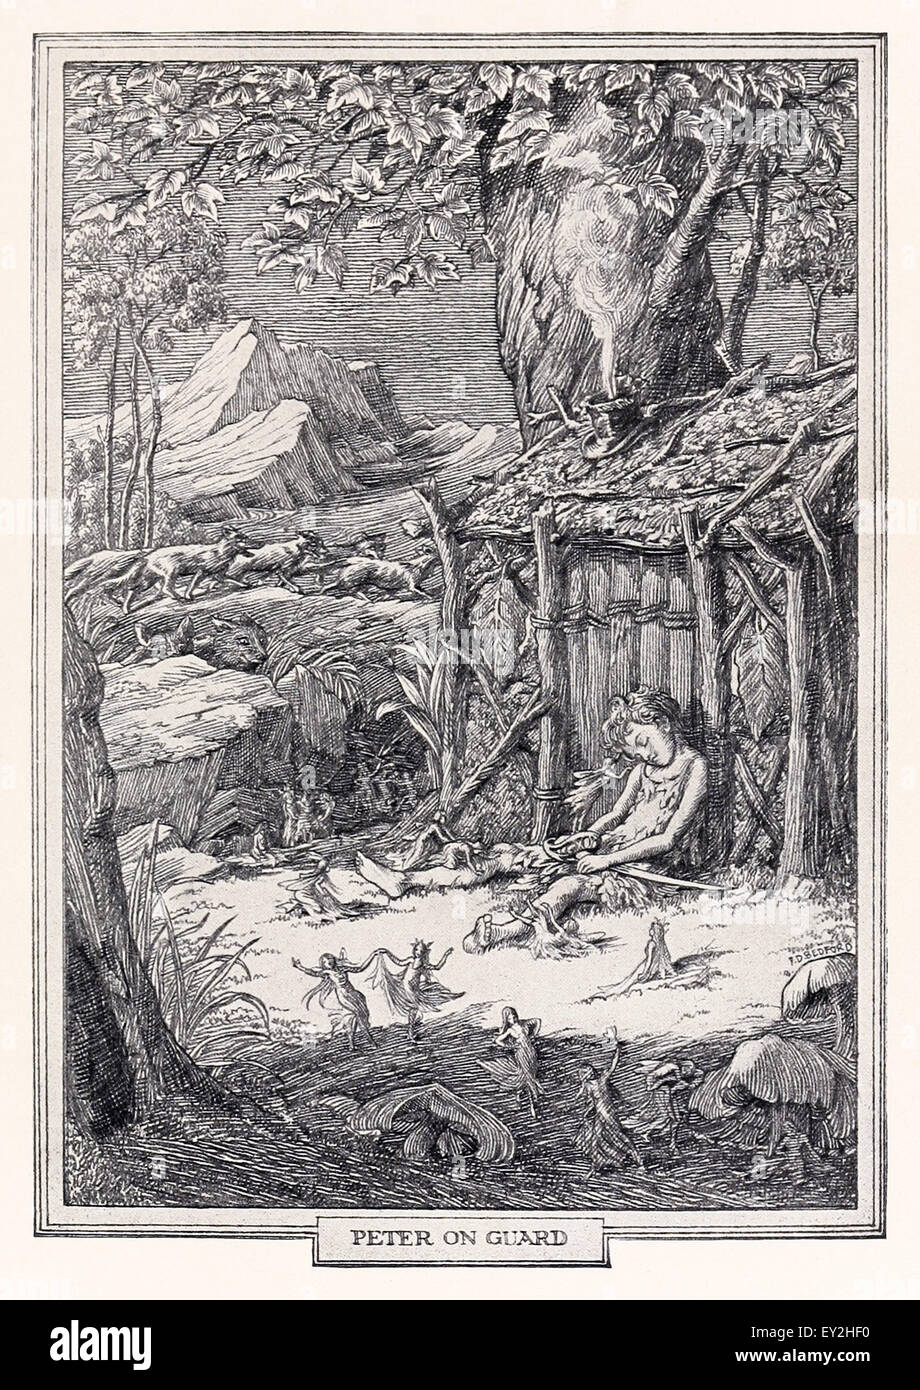 'Peter la garde du chapitre 6 "Peter & Wendy' par J.M. Barrie (1860-1937), illustration par F.D. Bedford (1864-1954). Voir la description pour plus d'informations. Banque D'Images